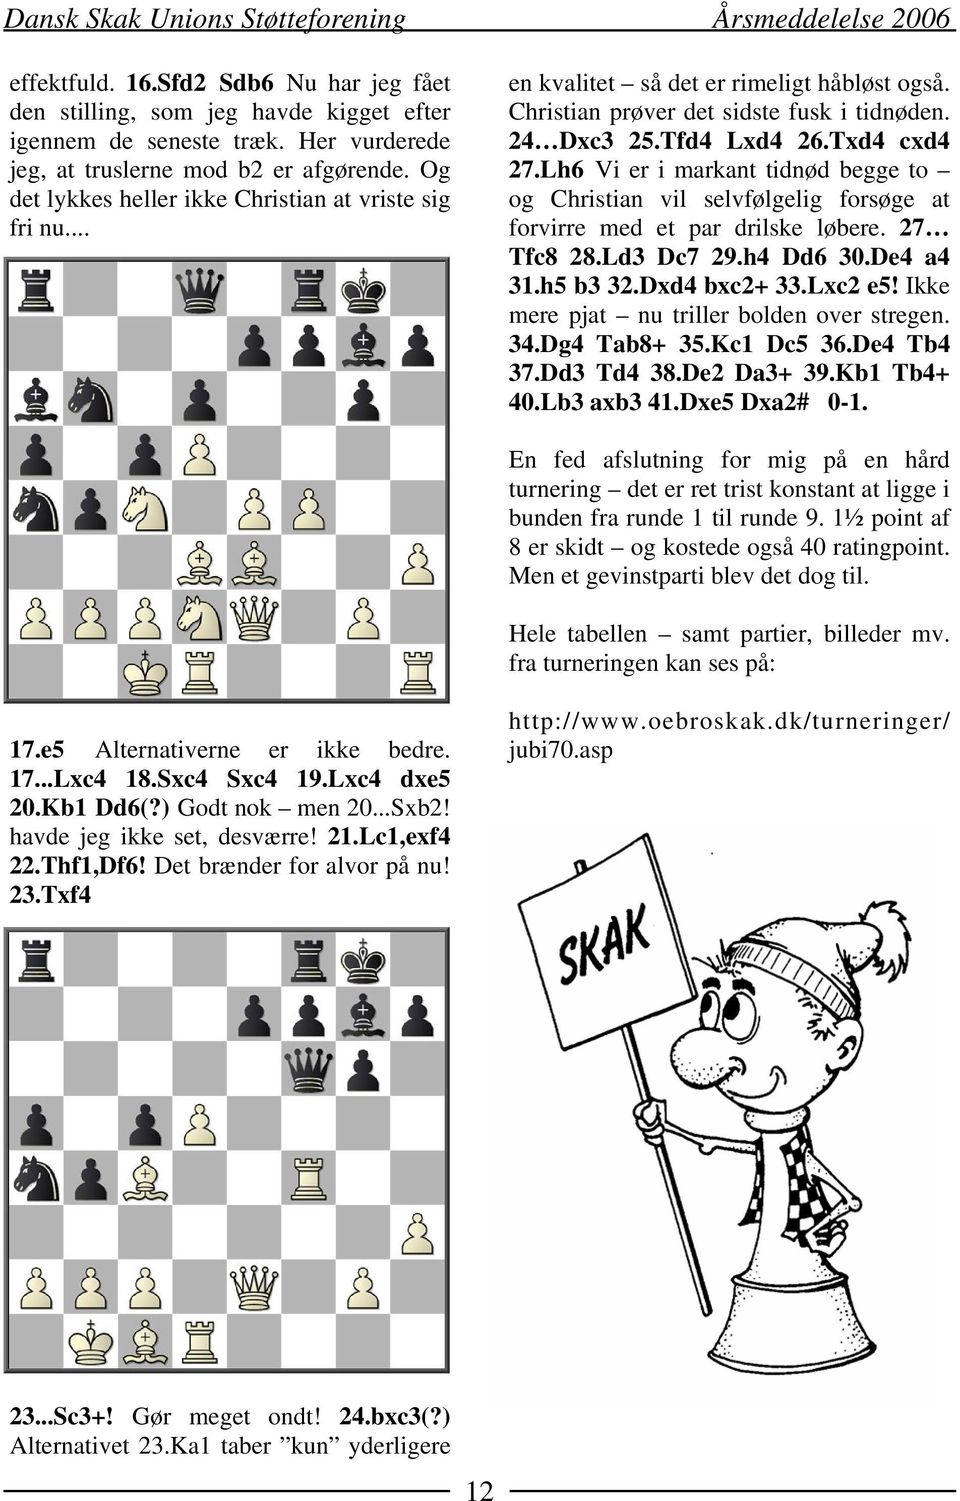 Lh6 Vi er i markant tidnød begge to og Christian vil selvfølgelig forsøge at forvirre med et par drilske løbere. 27 Tfc8 28.Ld3 Dc7 29.h4 Dd6 30.De4 a4 31.h5 b3 32.Dxd4 bxc2+ 33.Lxc2 e5!